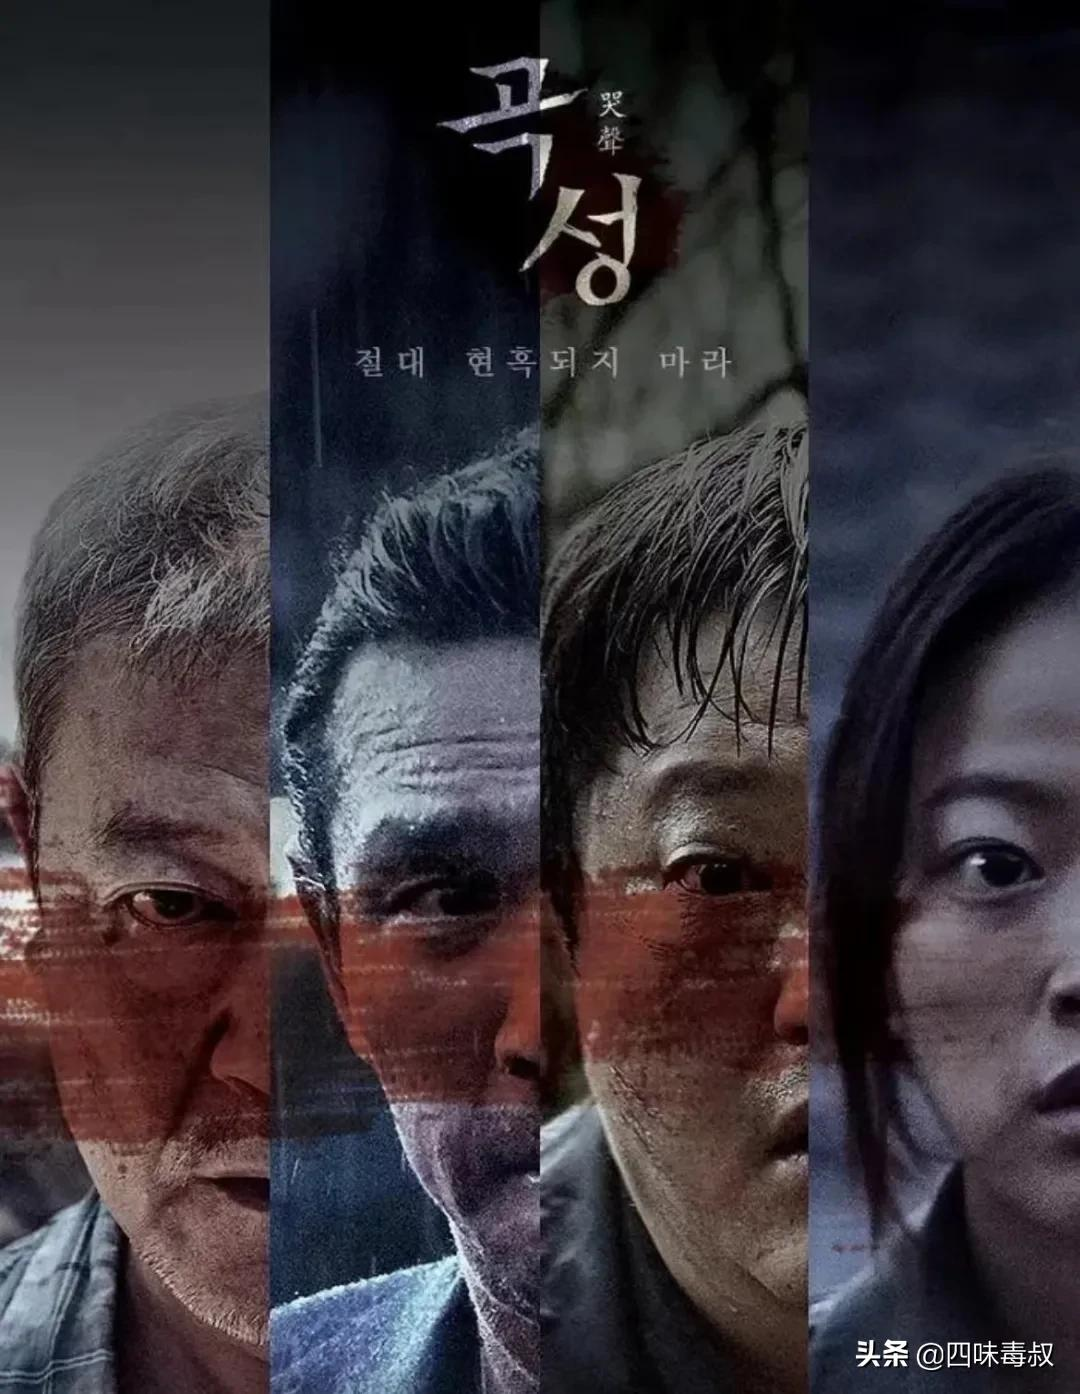 侦探韩国电影剧情「梳理」
